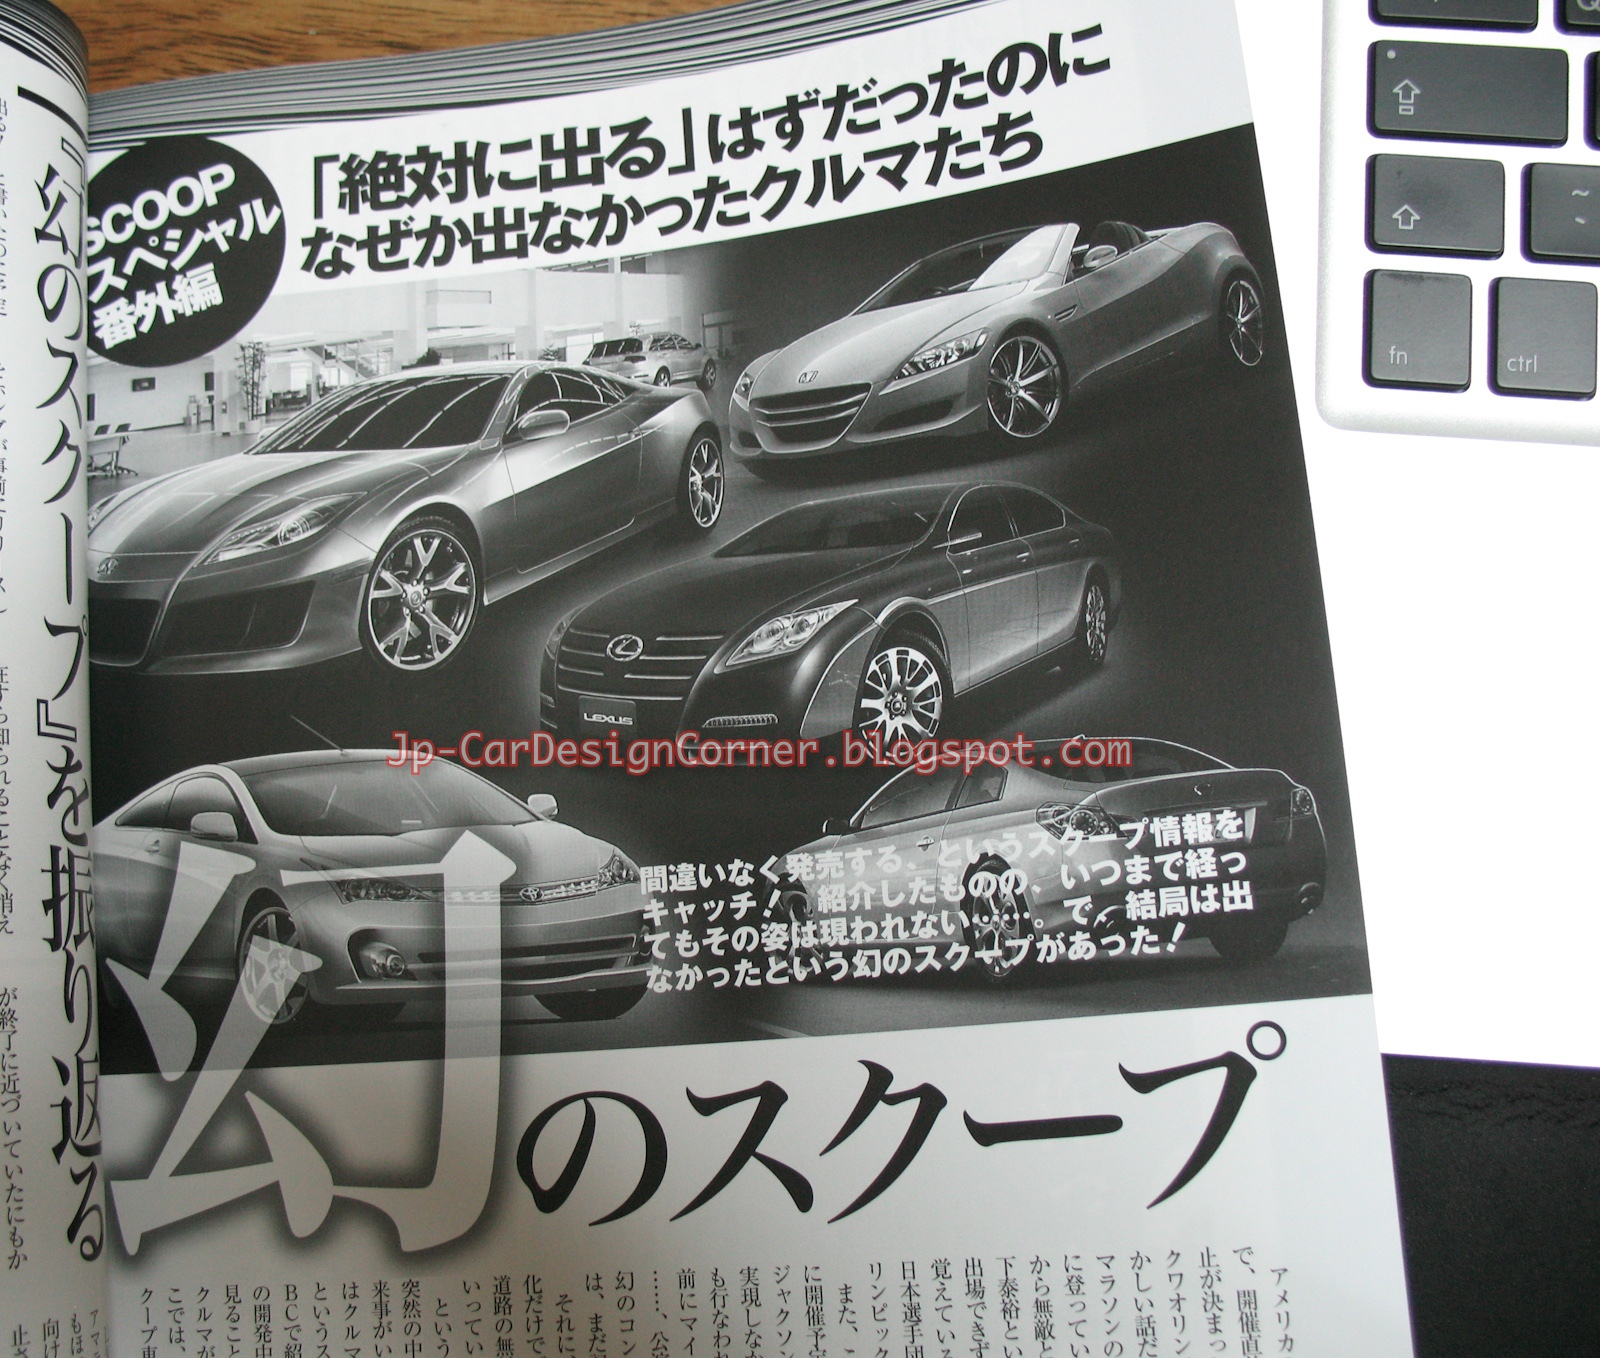 日本自動車デザインコーナー 「Japanese Car Design Corner」: Best Car Super Scoop